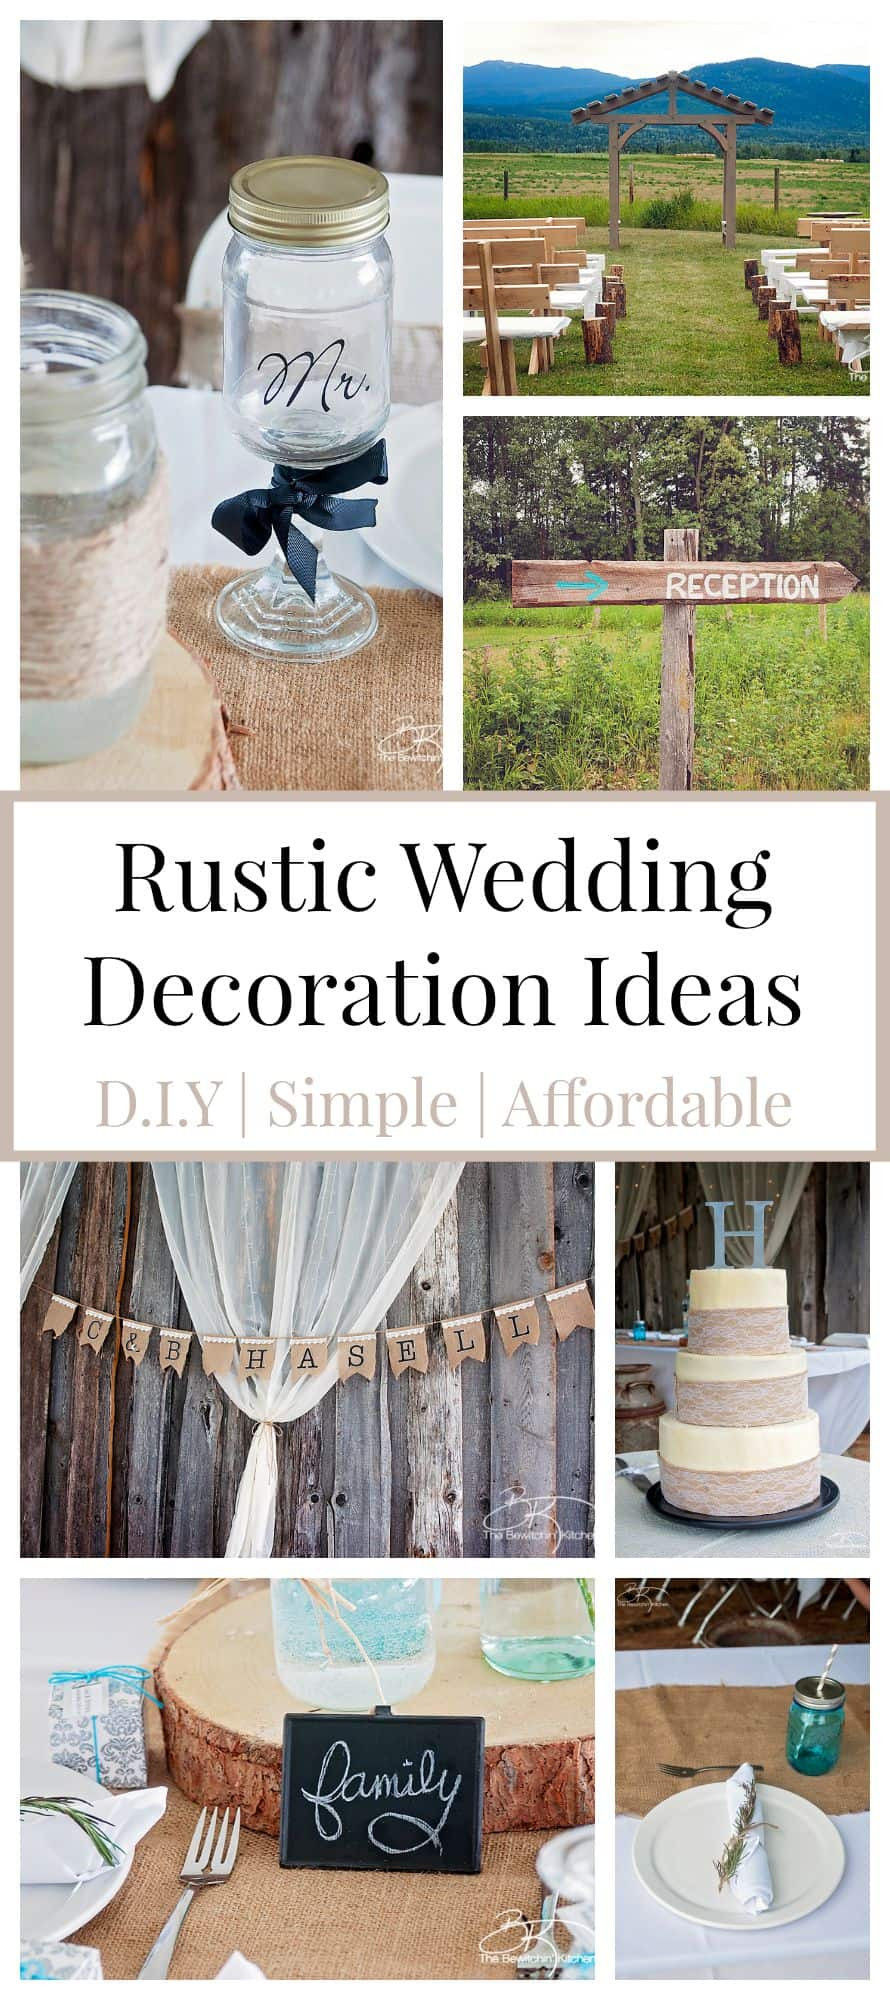 DIY Rustic Wedding
 Rustic Wedding Ideas That Are DIY & Affordable